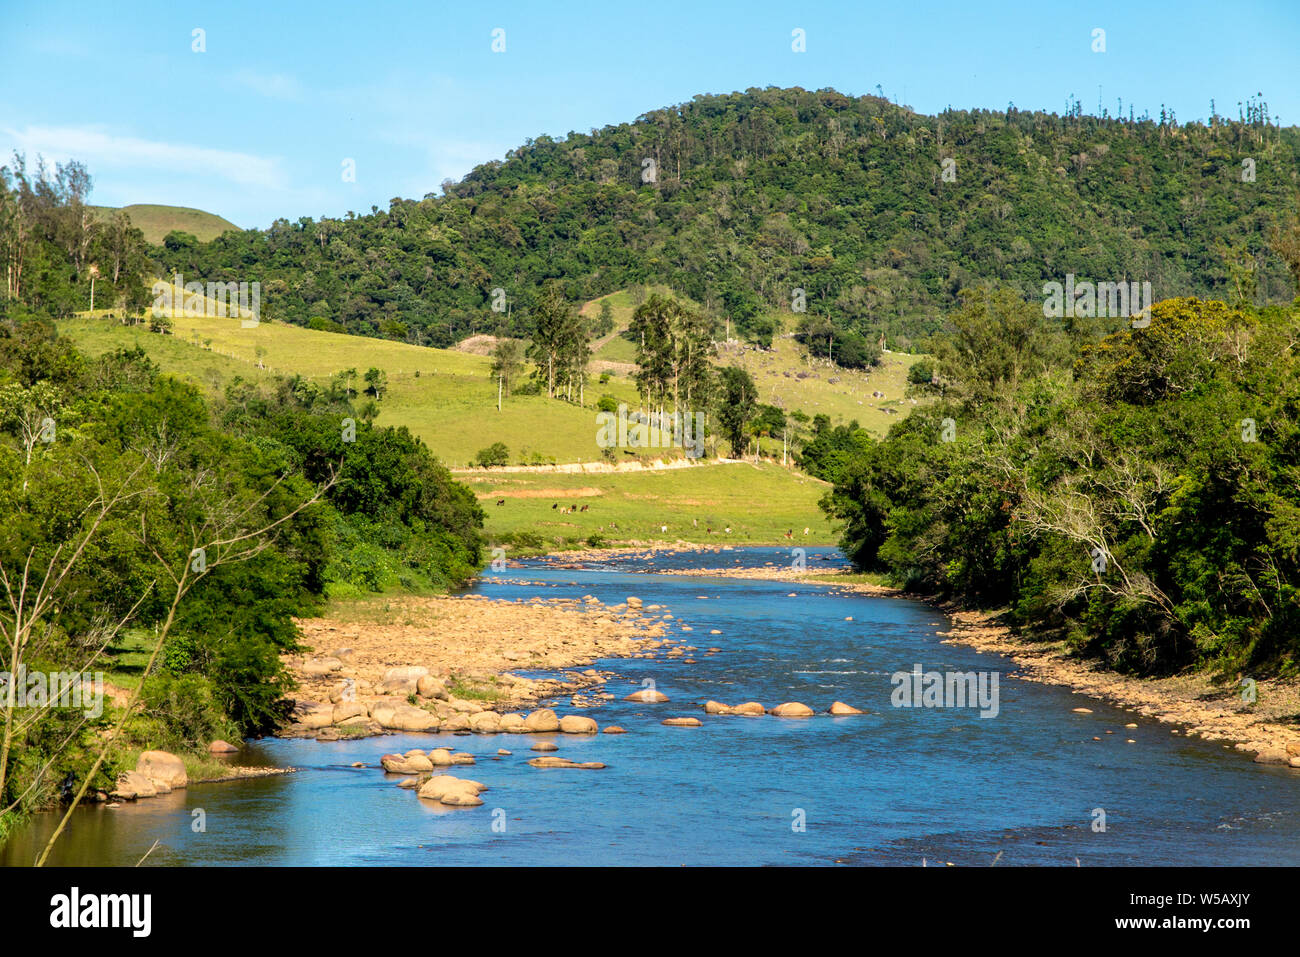 Ampia e fiume calmo, con pietre e un sacco di vegetazione nei margini, sotto il cielo blu Foto Stock